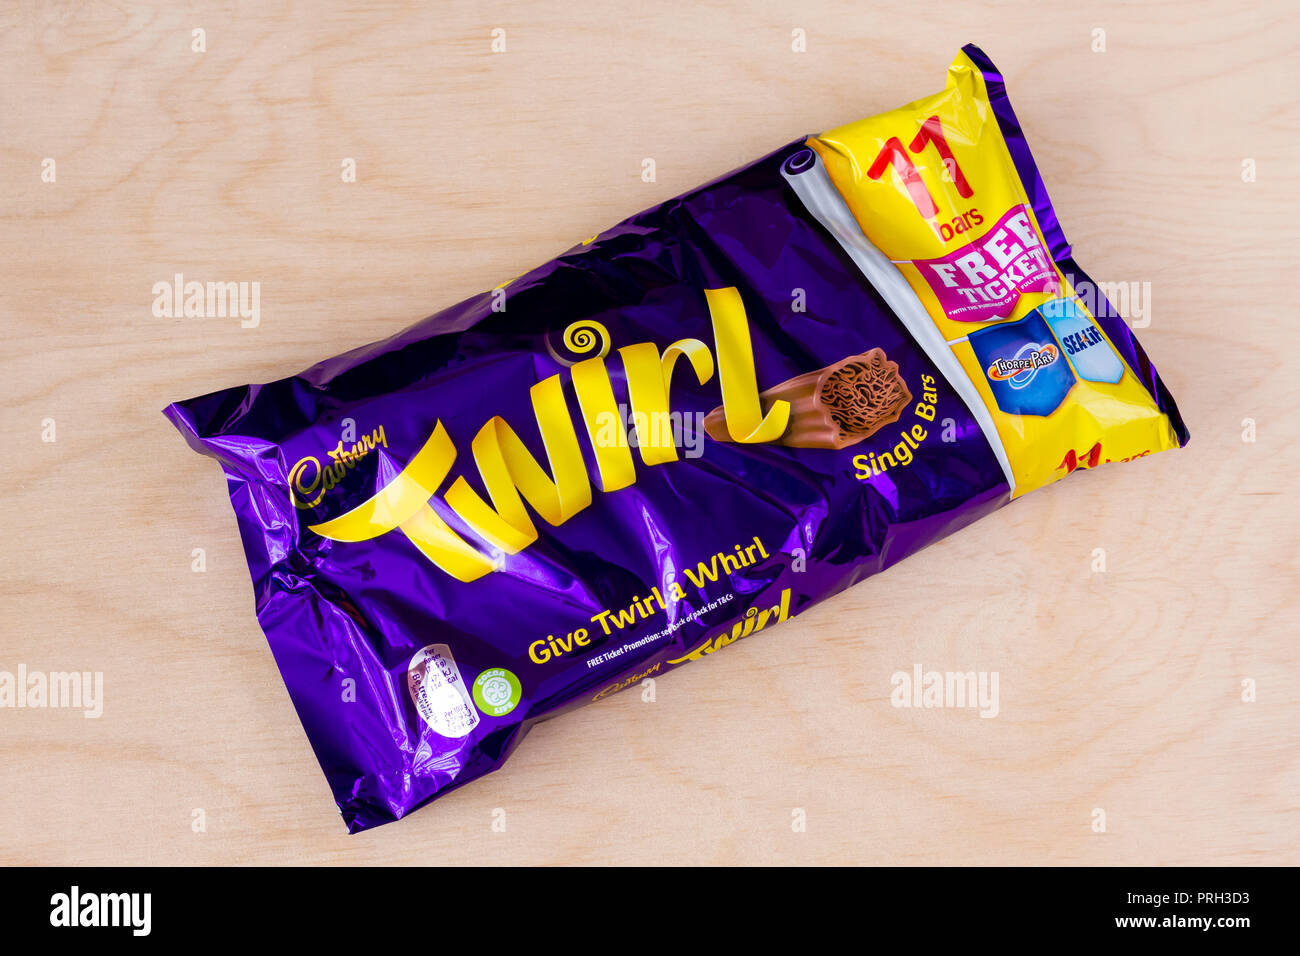 Emballage multiple de Twirl Cadbury chocolat, pack de 11 barres non ouvert, Royaume-Uni Banque D'Images